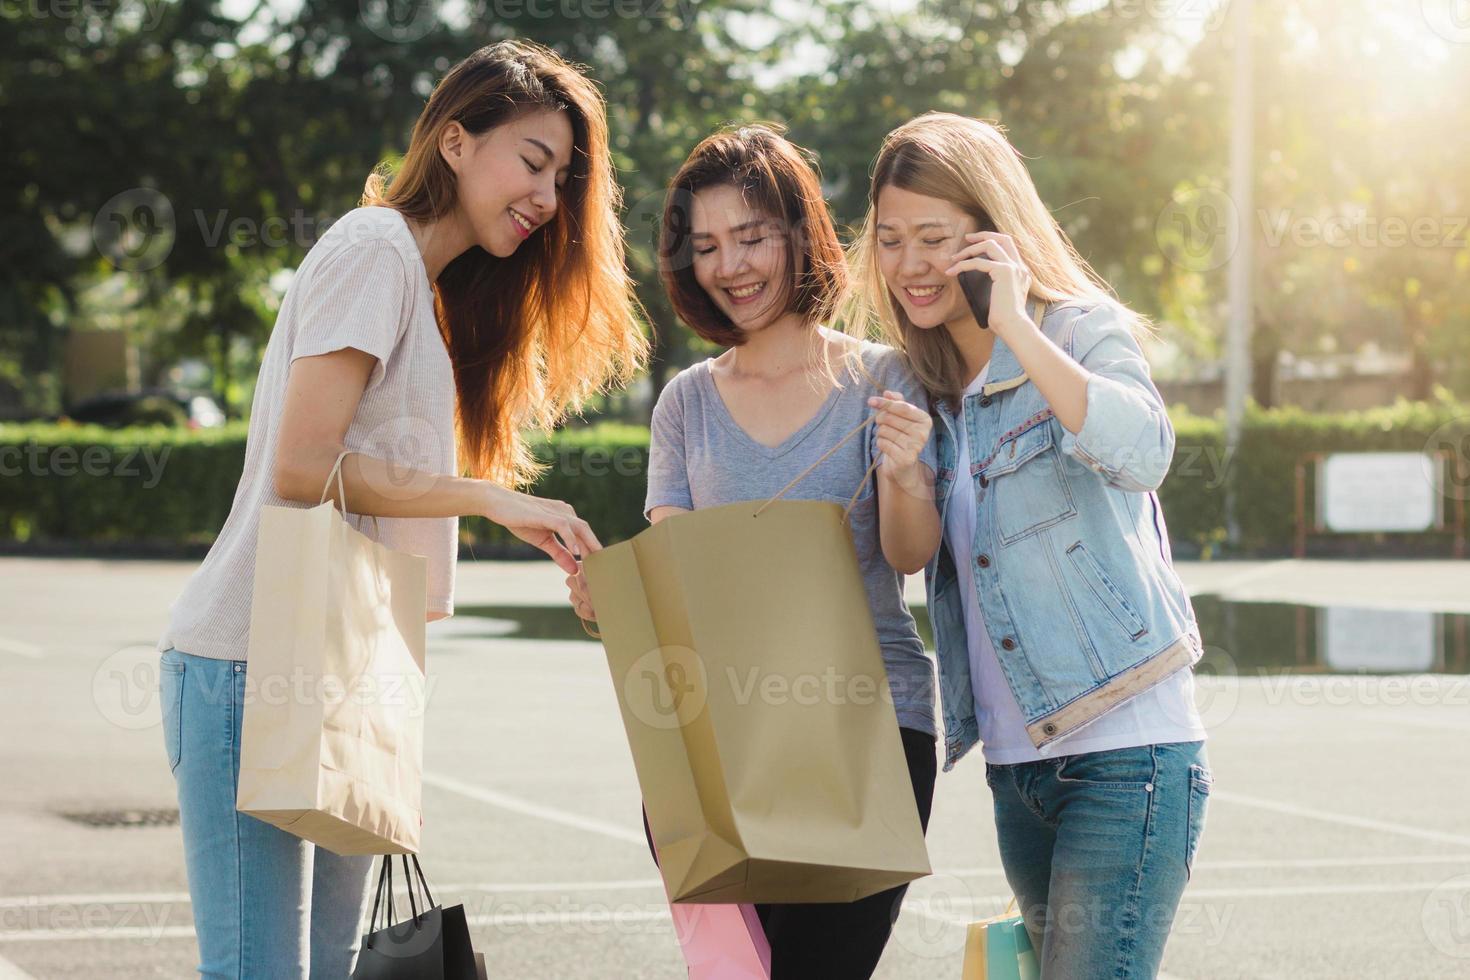 Gruppe junger asiatischer Frauen, die mit Einkaufstüten in den Händen auf einem Markt im Freien einkaufen. junge frauen zeigen bei warmem sonnenlicht, was sie in der einkaufstasche haben. gruppen-outdoor-shopping-konzept. foto